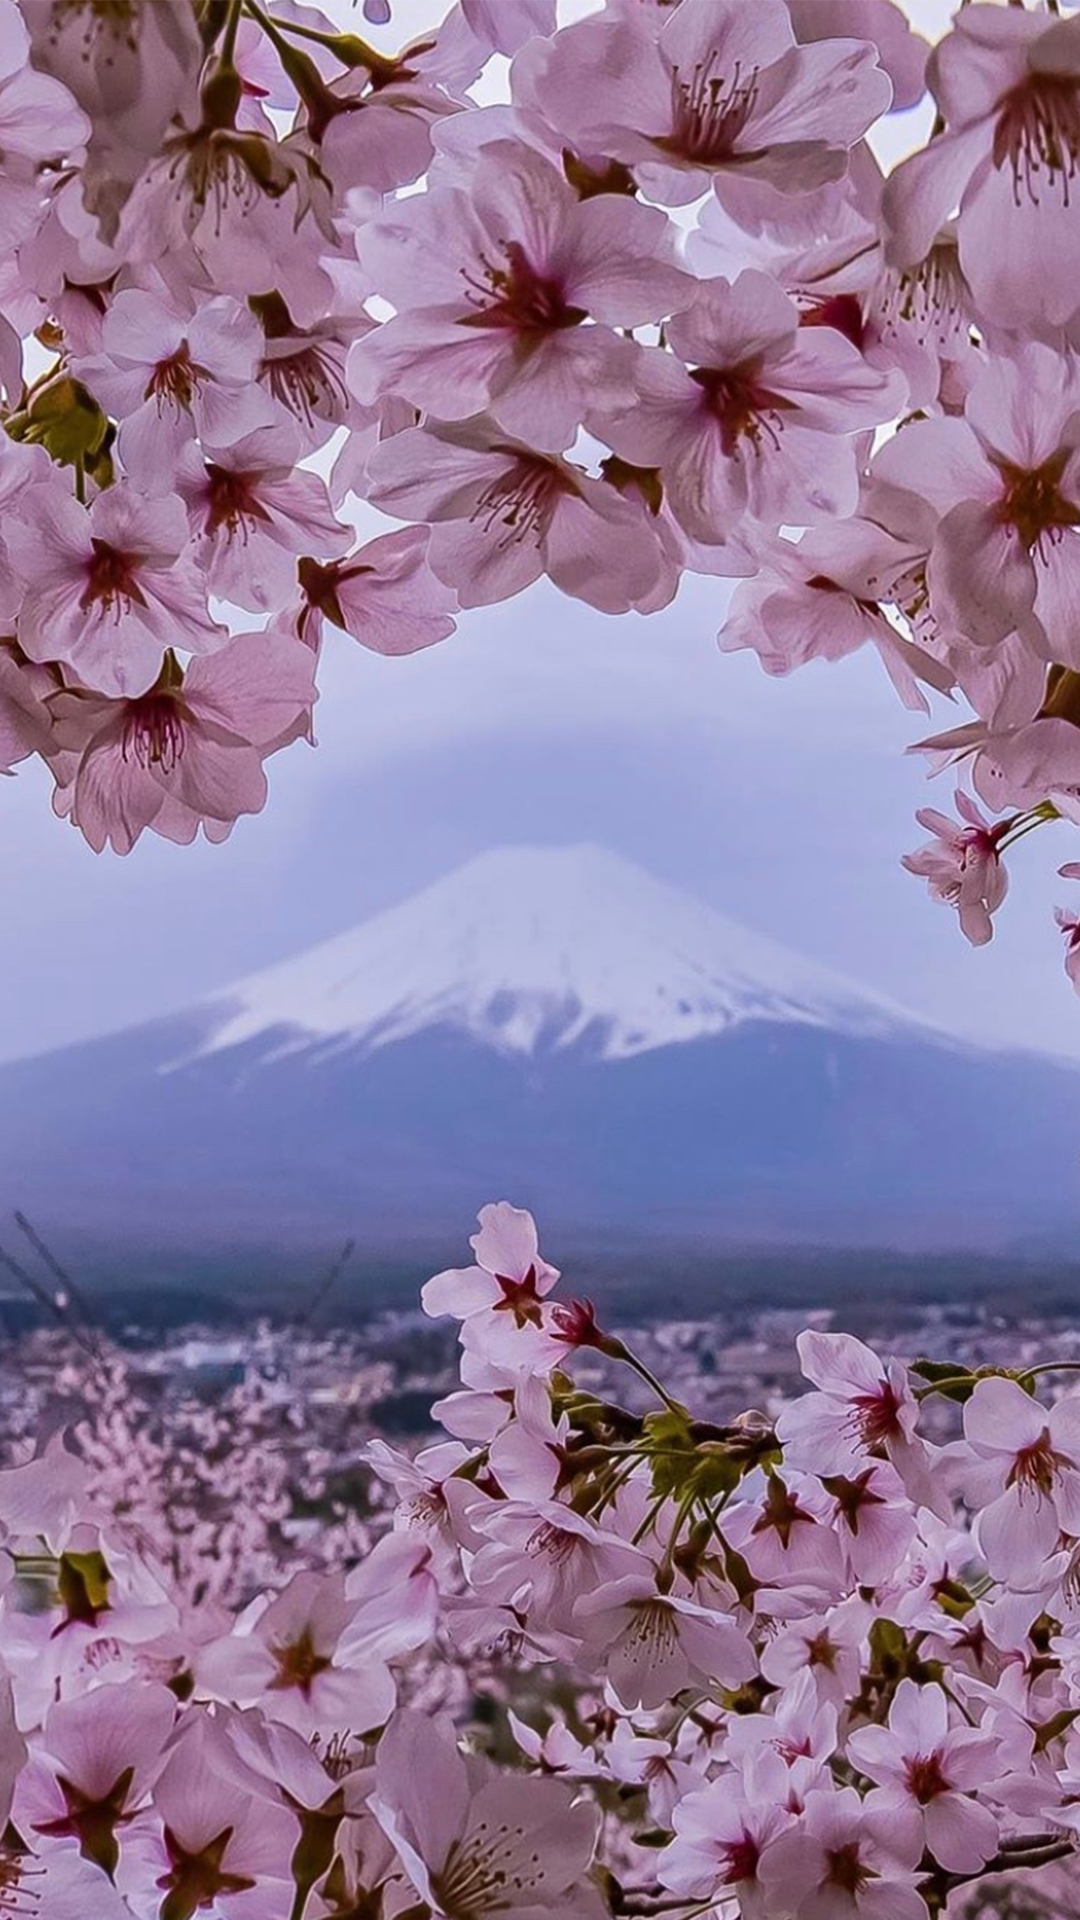 富士山樱花唯美浪漫风景,高清图片,手机壁纸